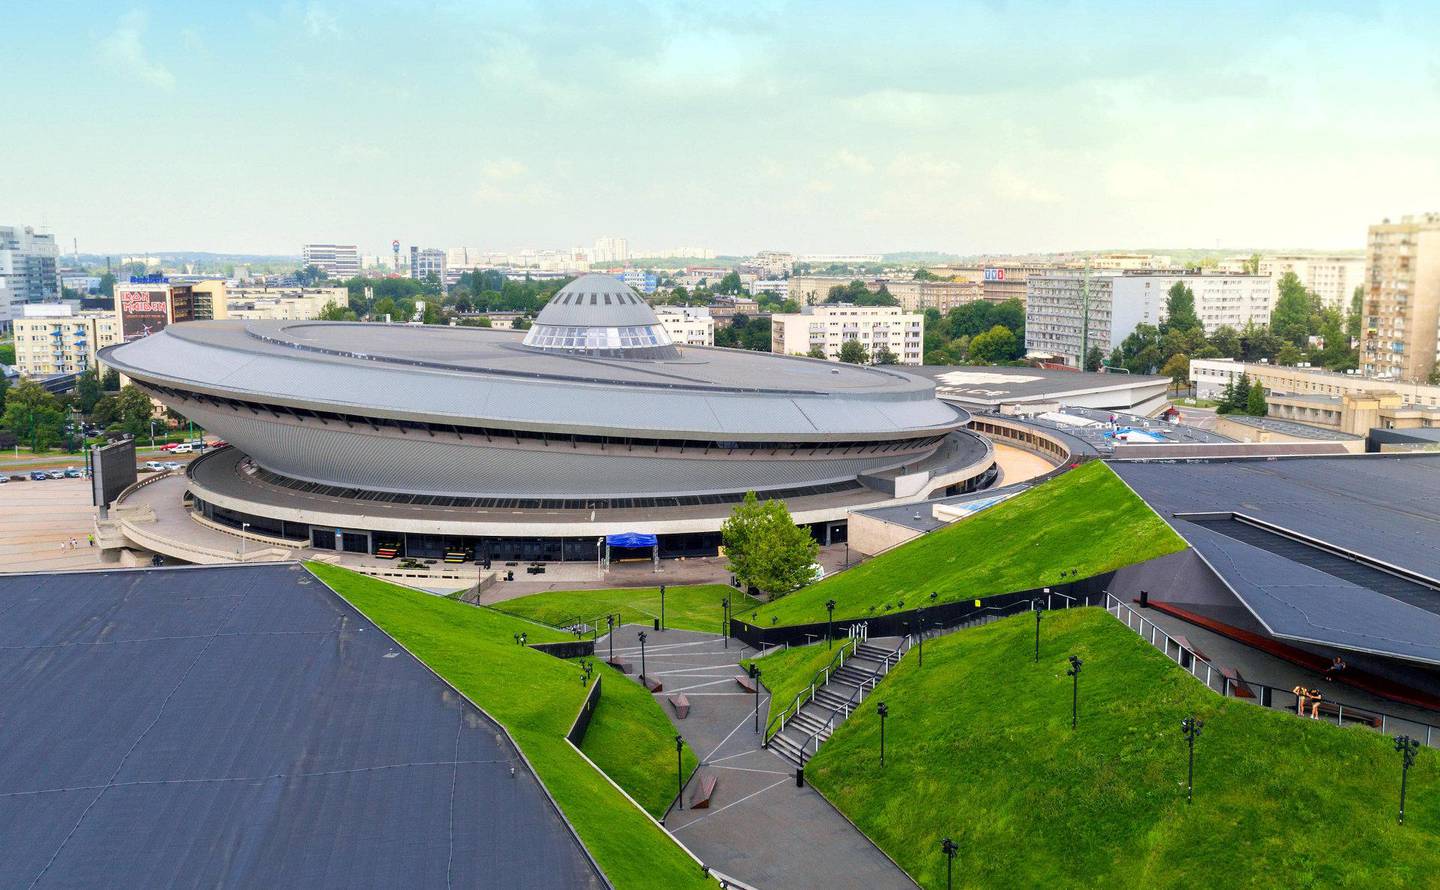 møtested: Denne UFO-lignende bygningen blir sentral under klimaforhandlingene i Katowice. FOTO: KATOWICE.EU